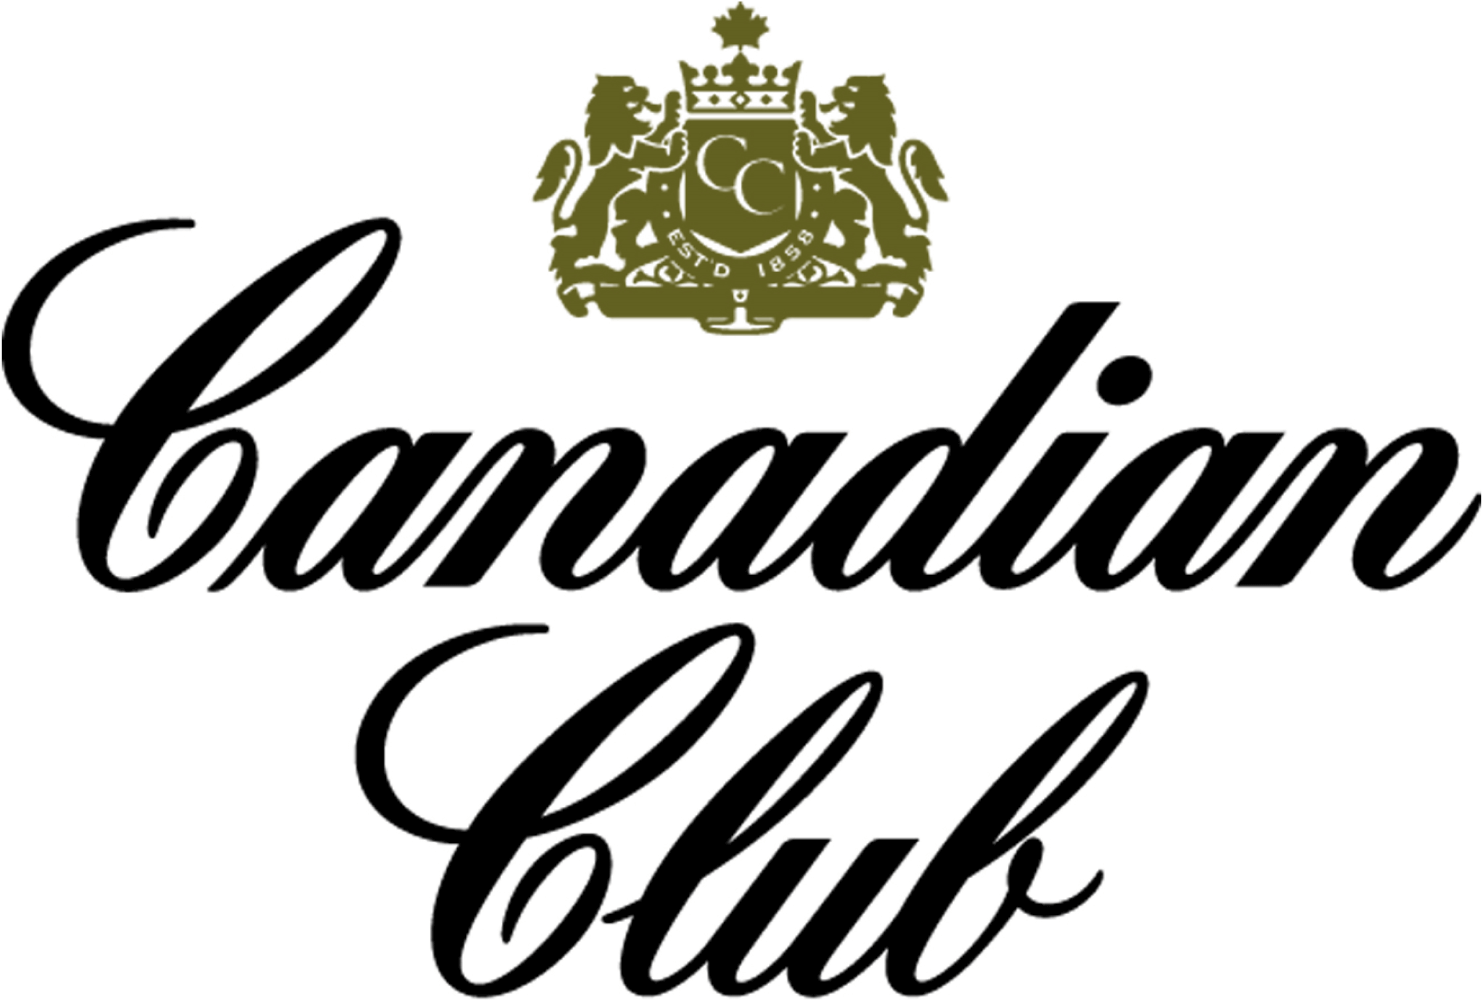 Canadian Club Distillery